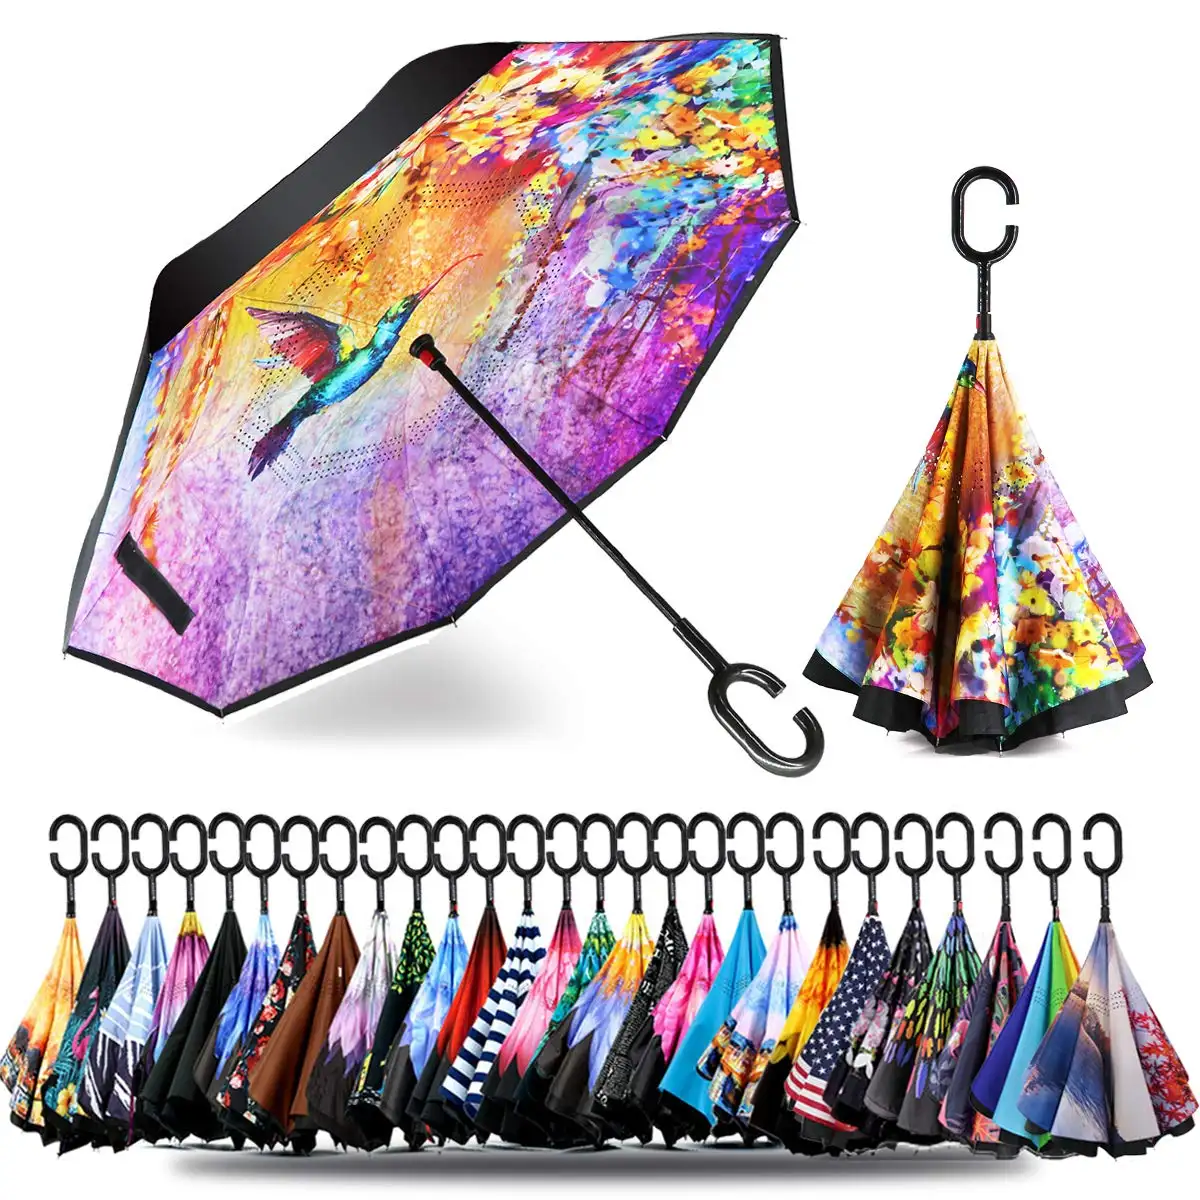 Padrão personalizado moderno Anti-UV impermeável Windproof Invertido Guarda-chuva inverso inverso com C-Shaped Handle guarda-chuvas